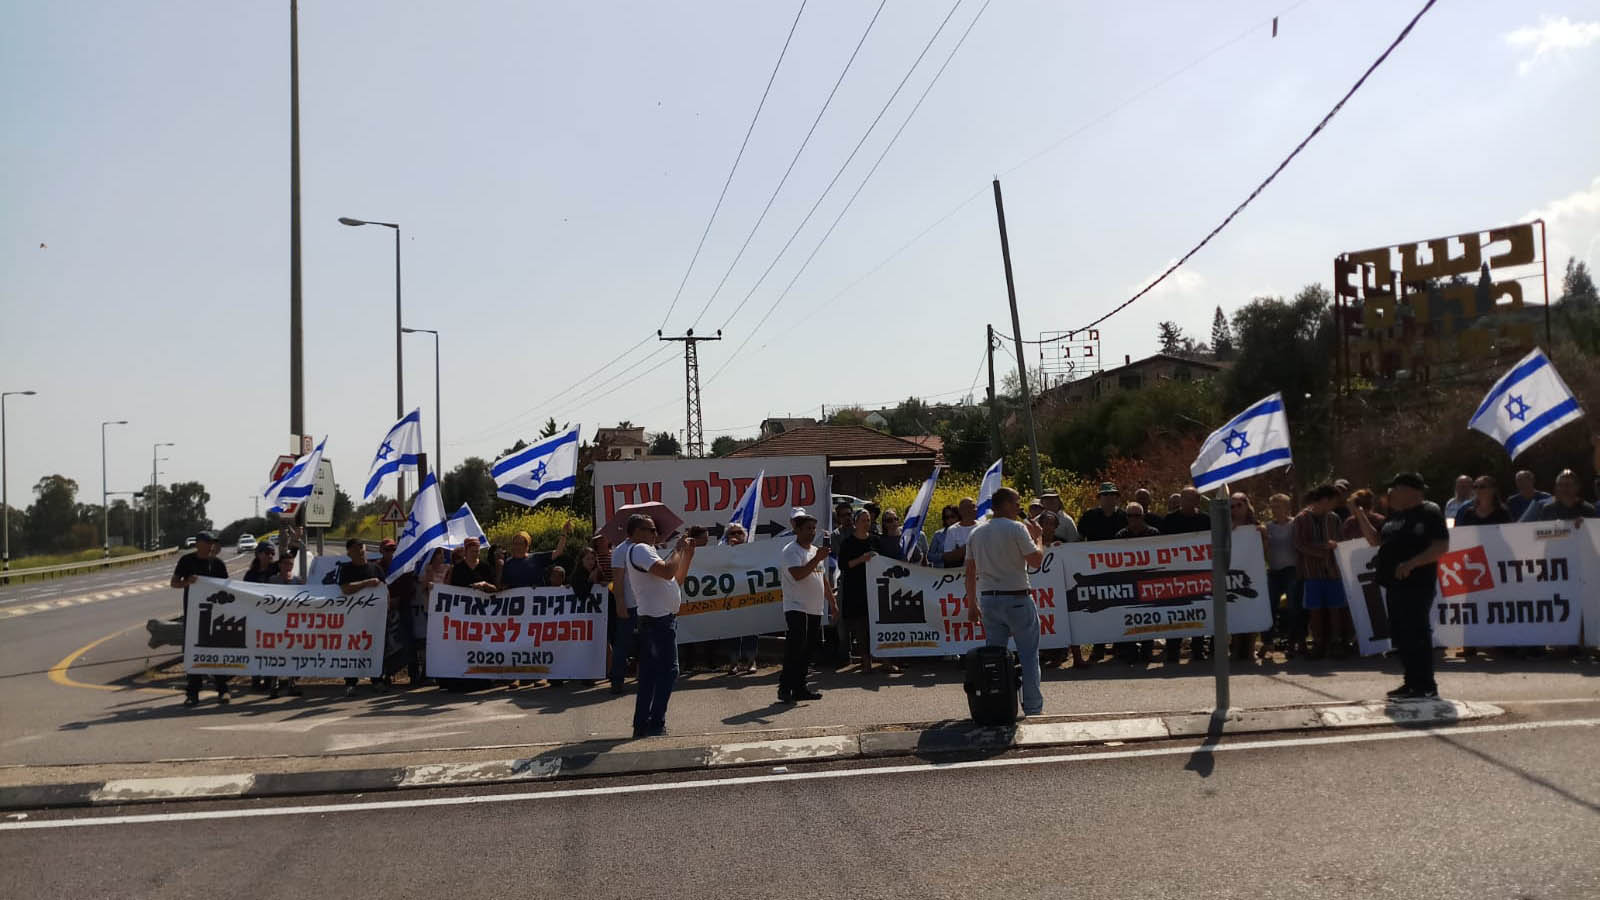 הפגנה כנגד הקמת תחנת הכח בסמוך למושב אליניה, 22 למרץ 2019 (צילום: תושב אילניה)